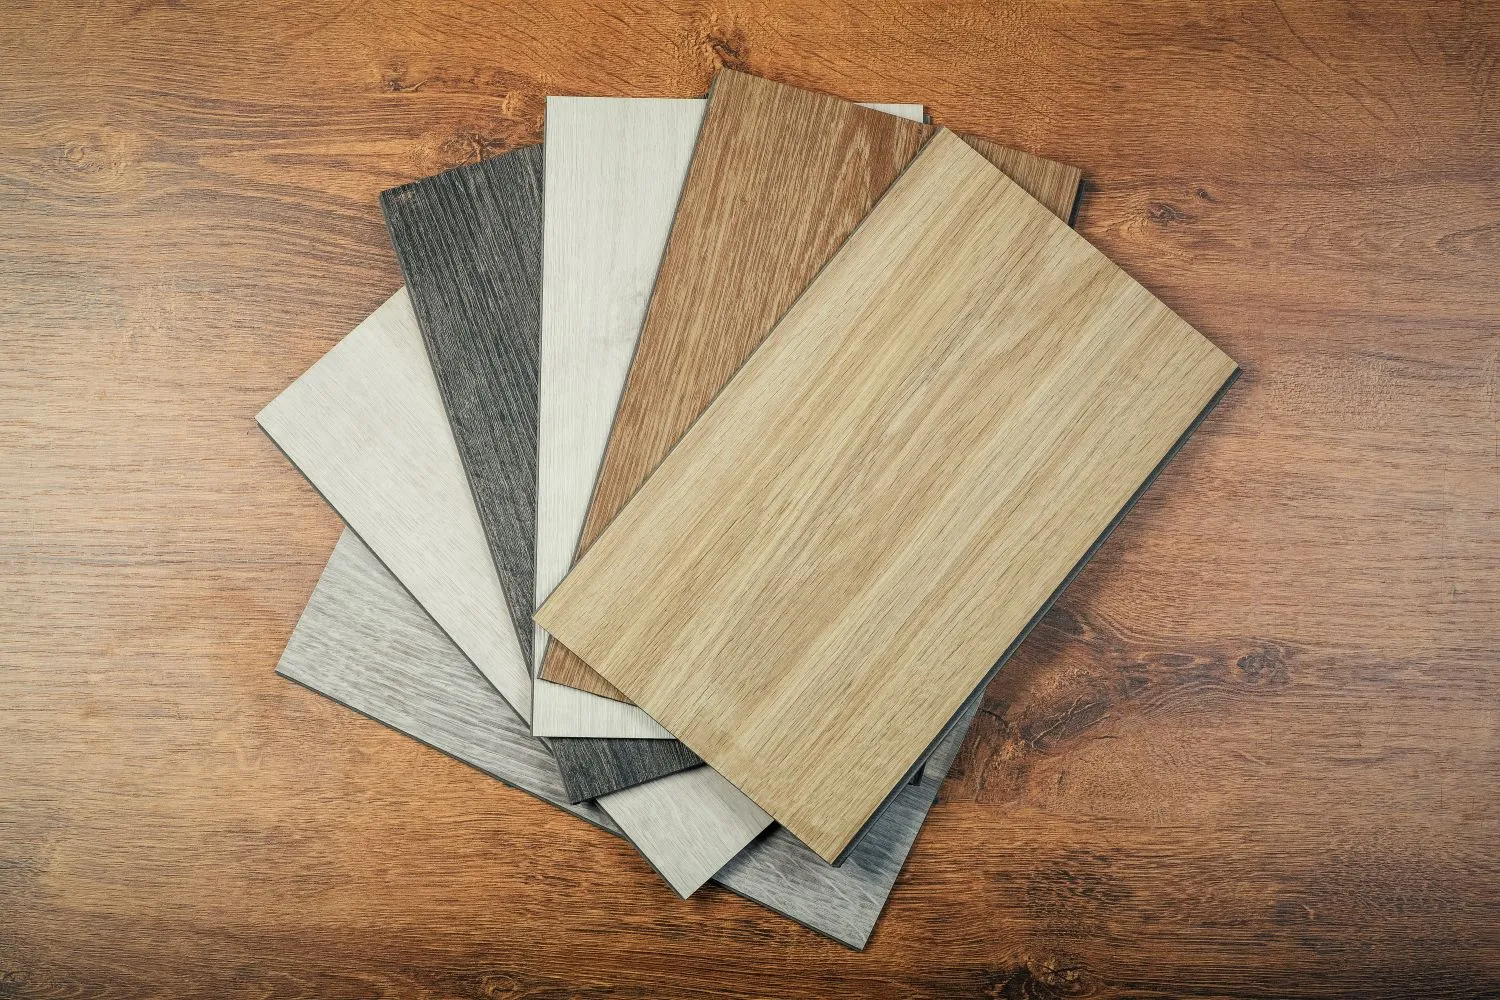 wood veneer samples